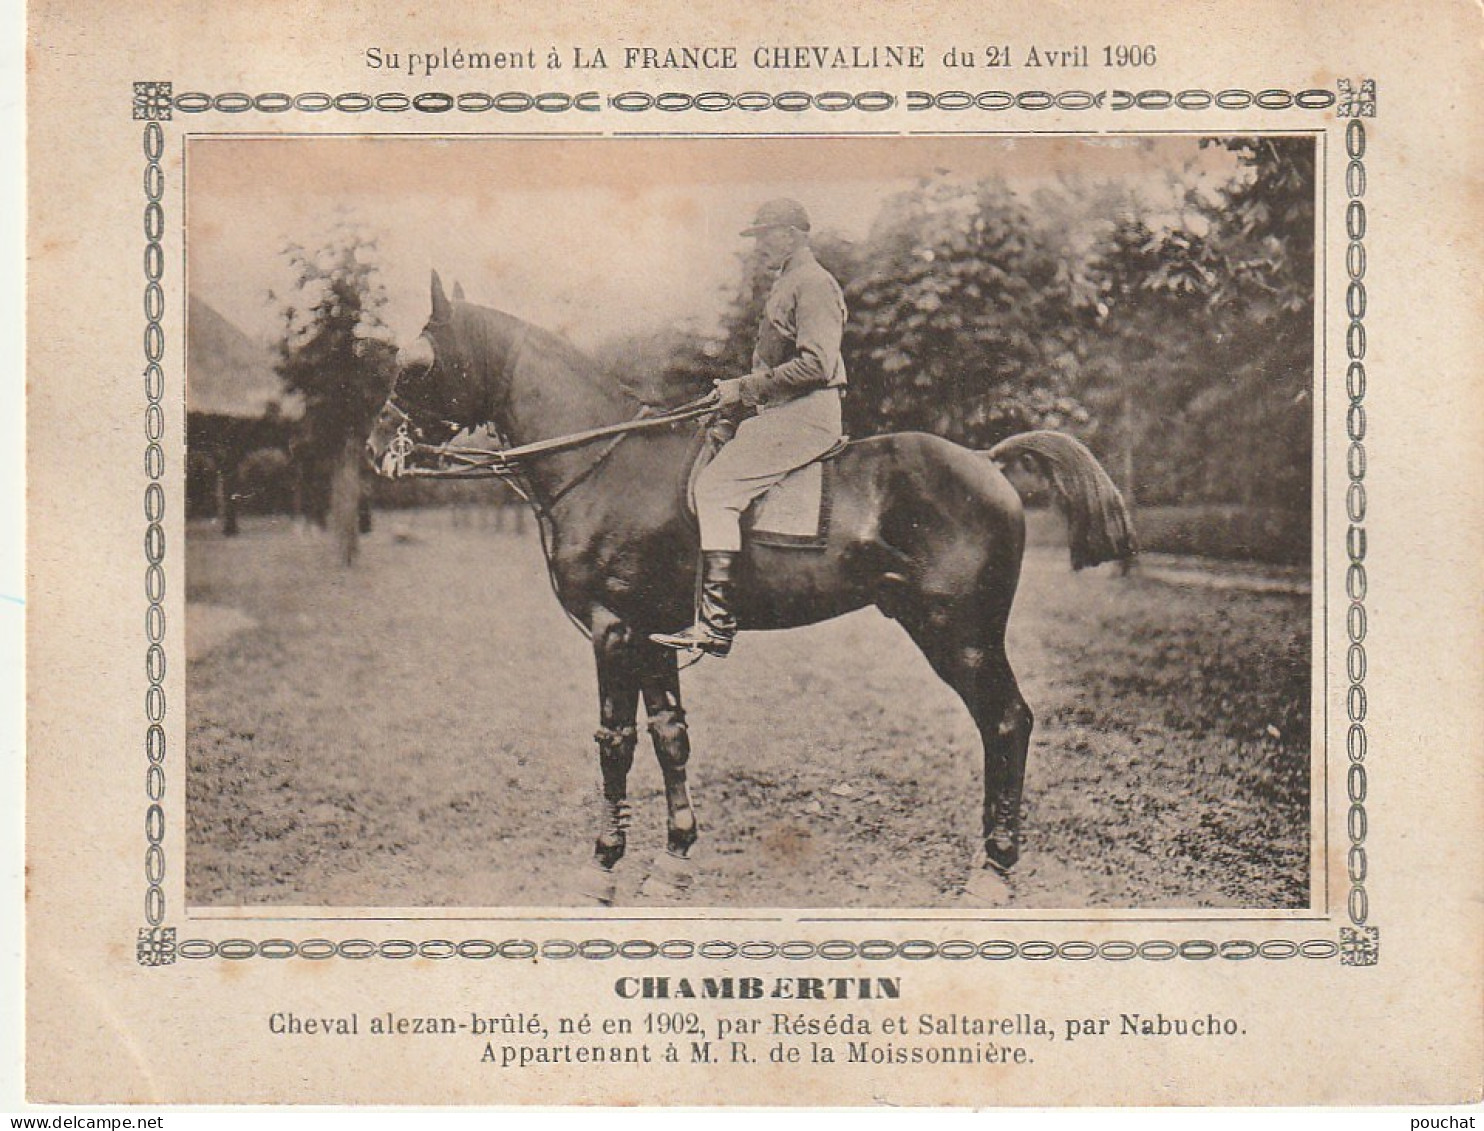 AA+ - " CHAMBERTIN " - CHEVAL ALEZAN BRULE APPARTENANT A M. R. DE LA MOISSONNIERE - SUPPL. FRANCE CHEVALINE AVRIL 1906 - Hippisme